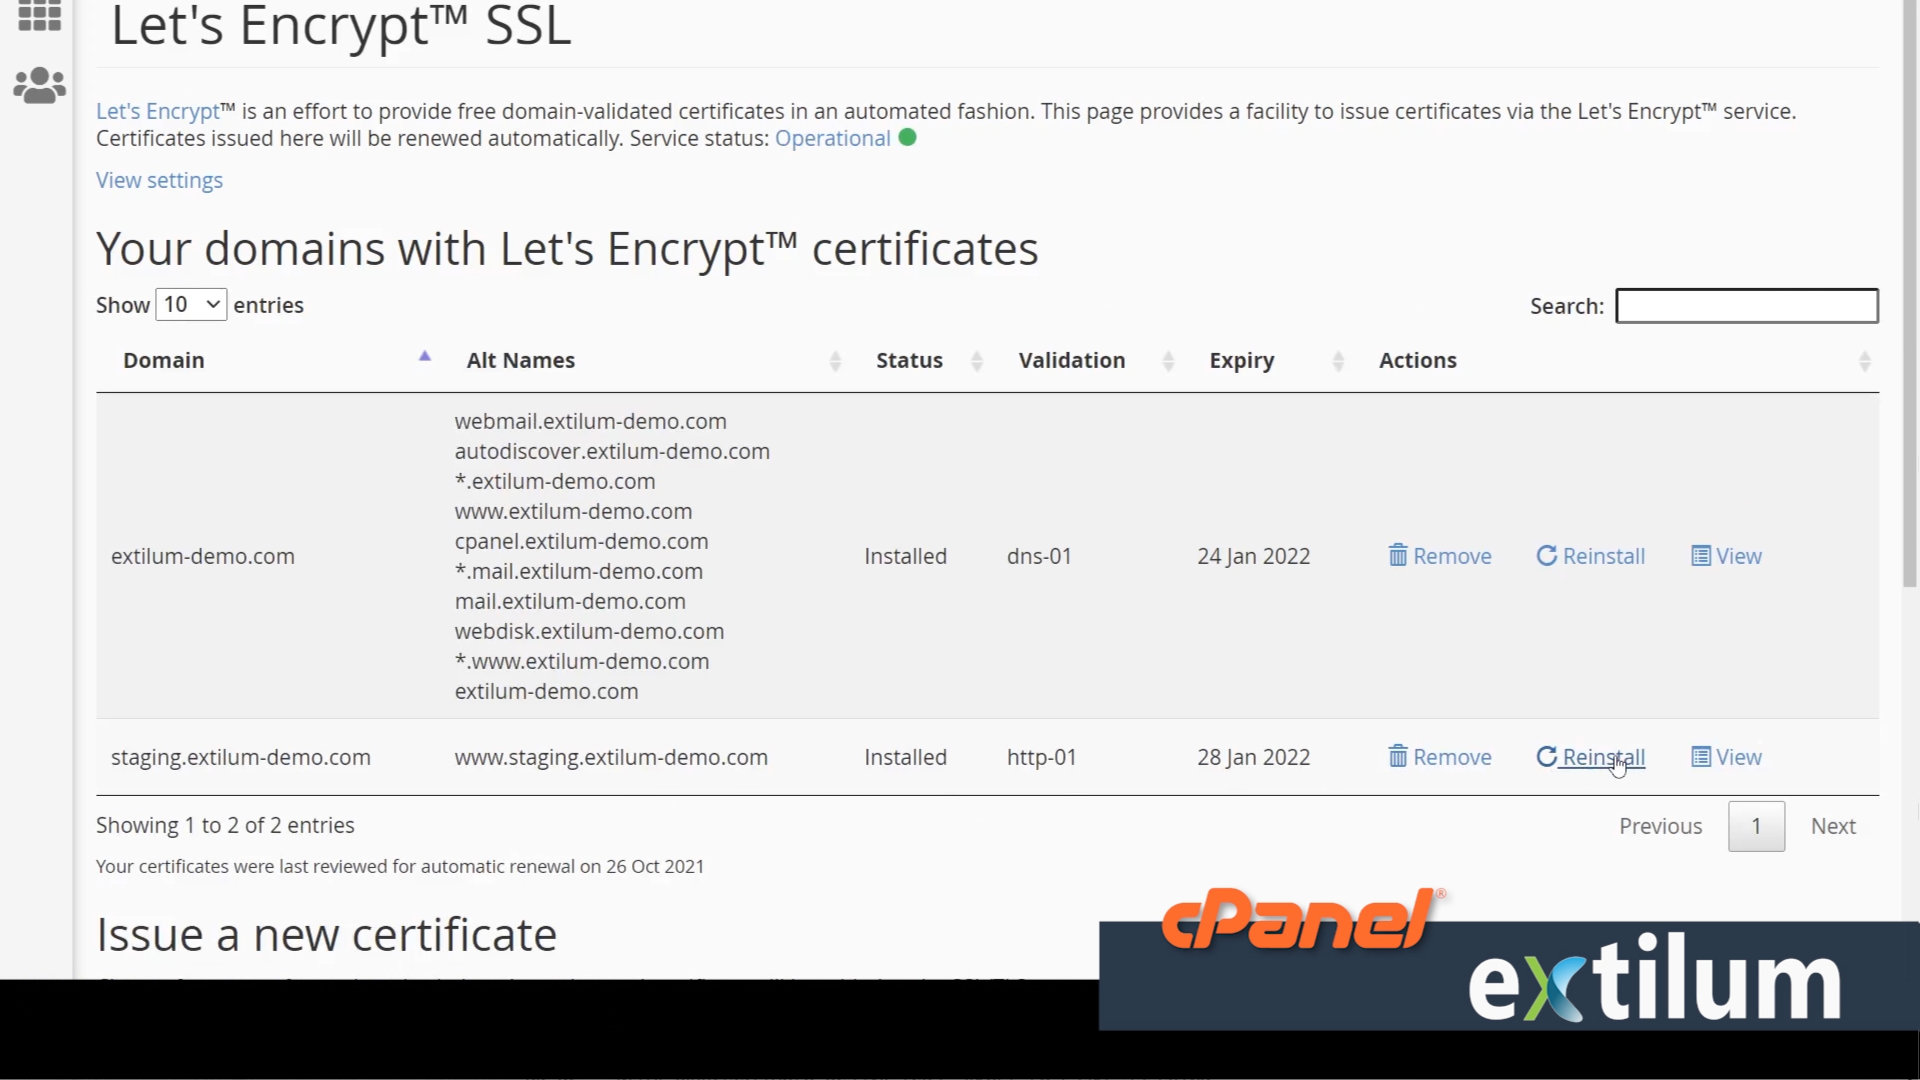 Extilum cPanel - Security - let encript ssl